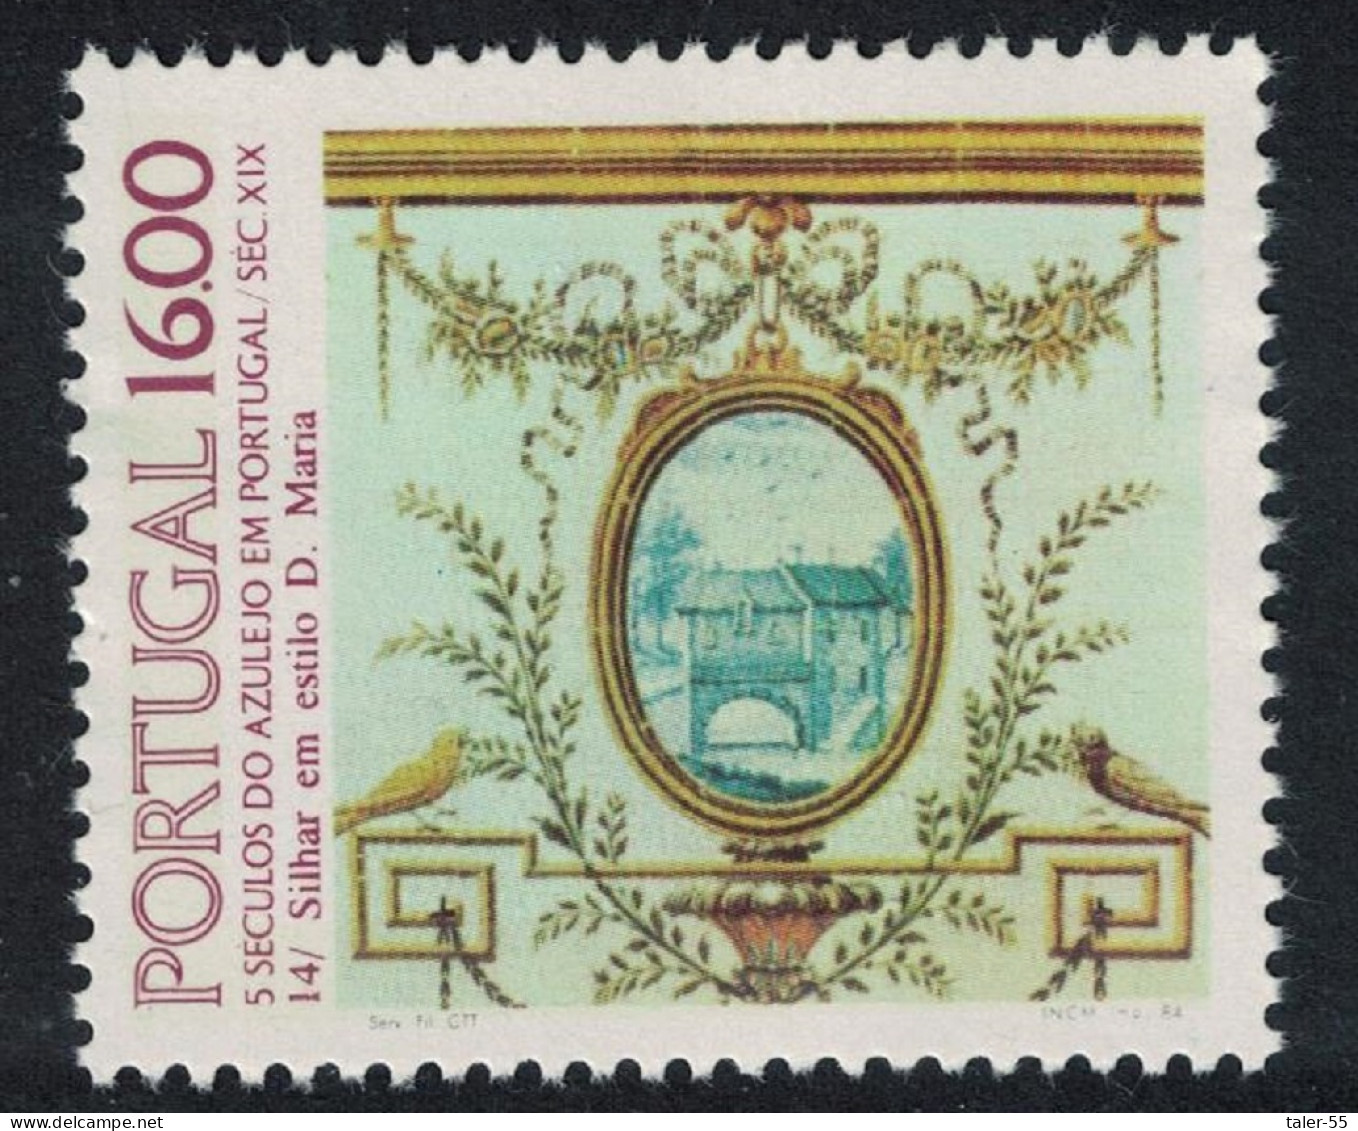 Portugal Tiles 14th Series 1984 MNH SG#1970 - Neufs